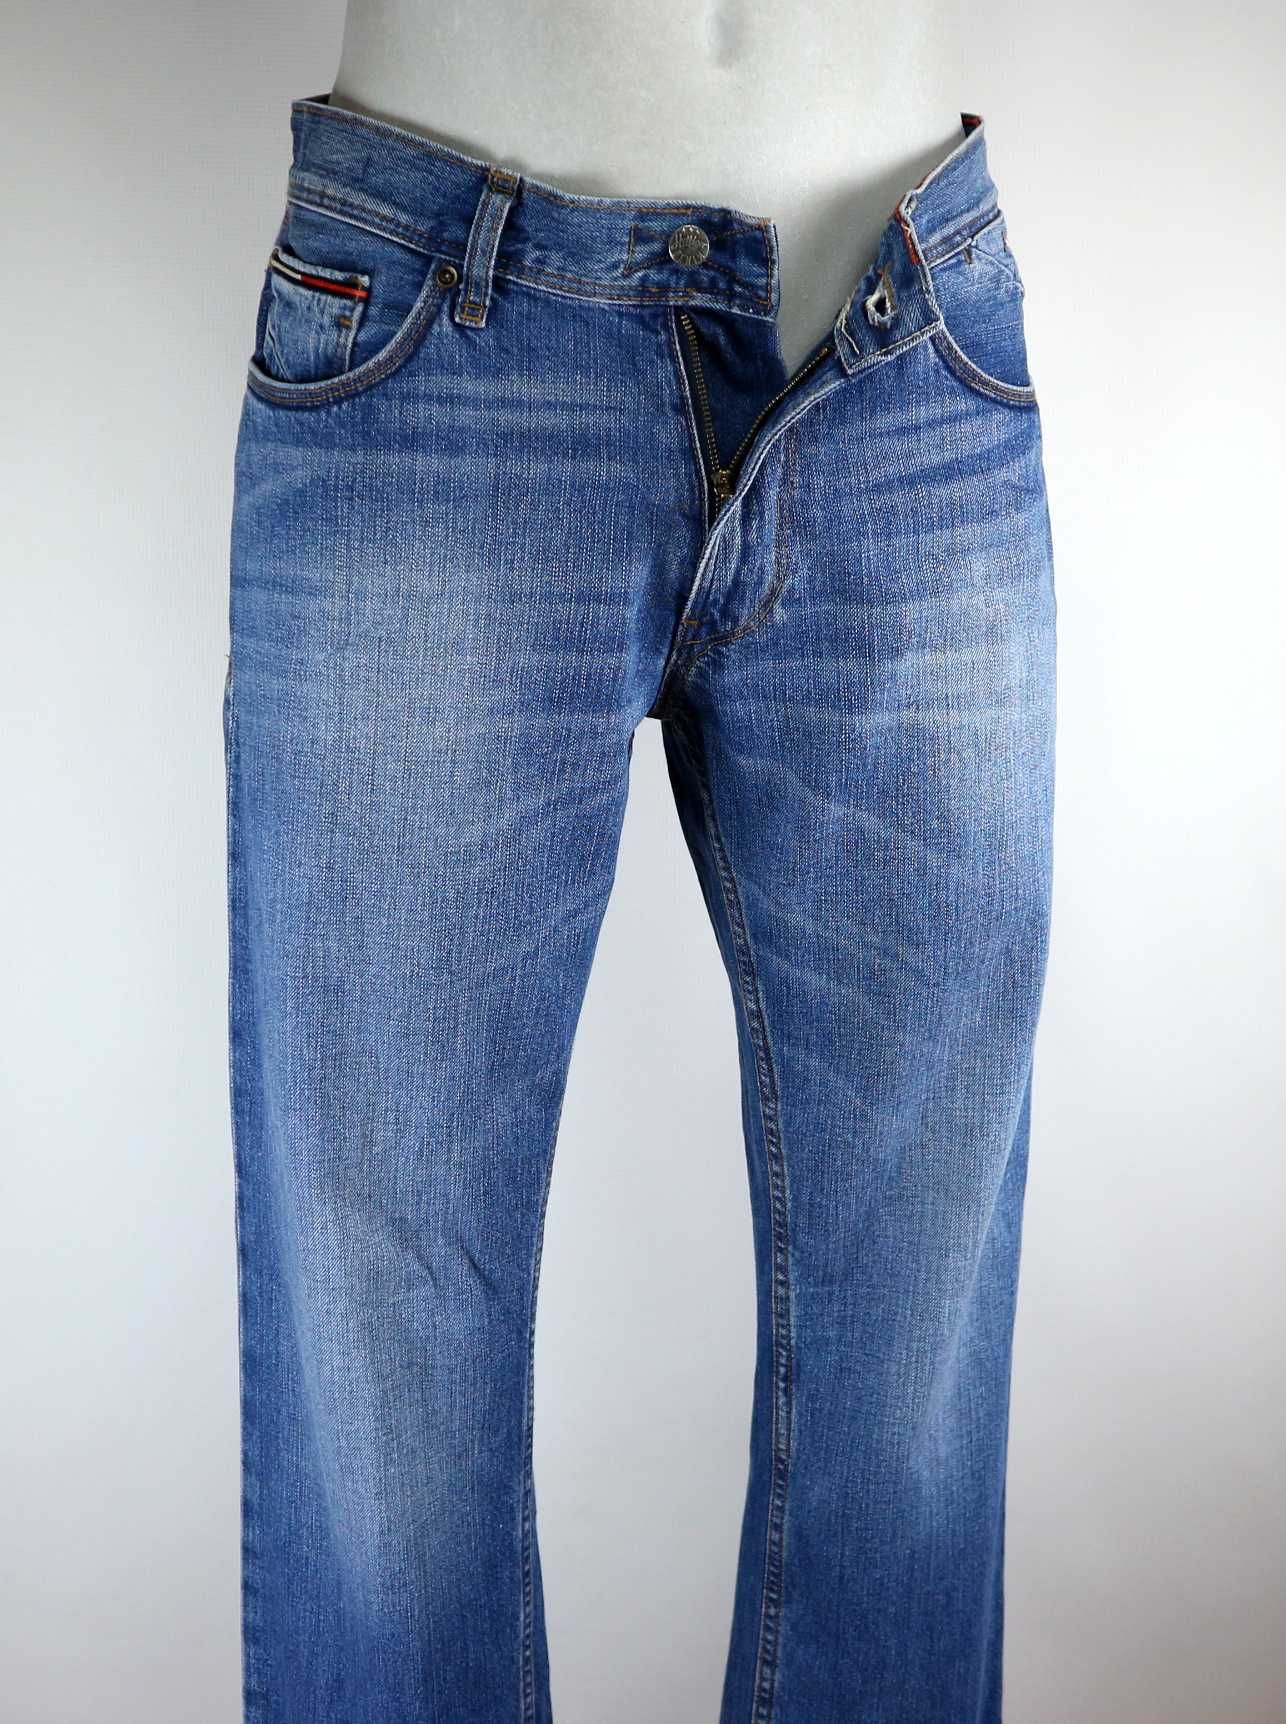 Hilfiger Denim Ryan spodnie jeansy W34 L32 pas 2 x 44 cm